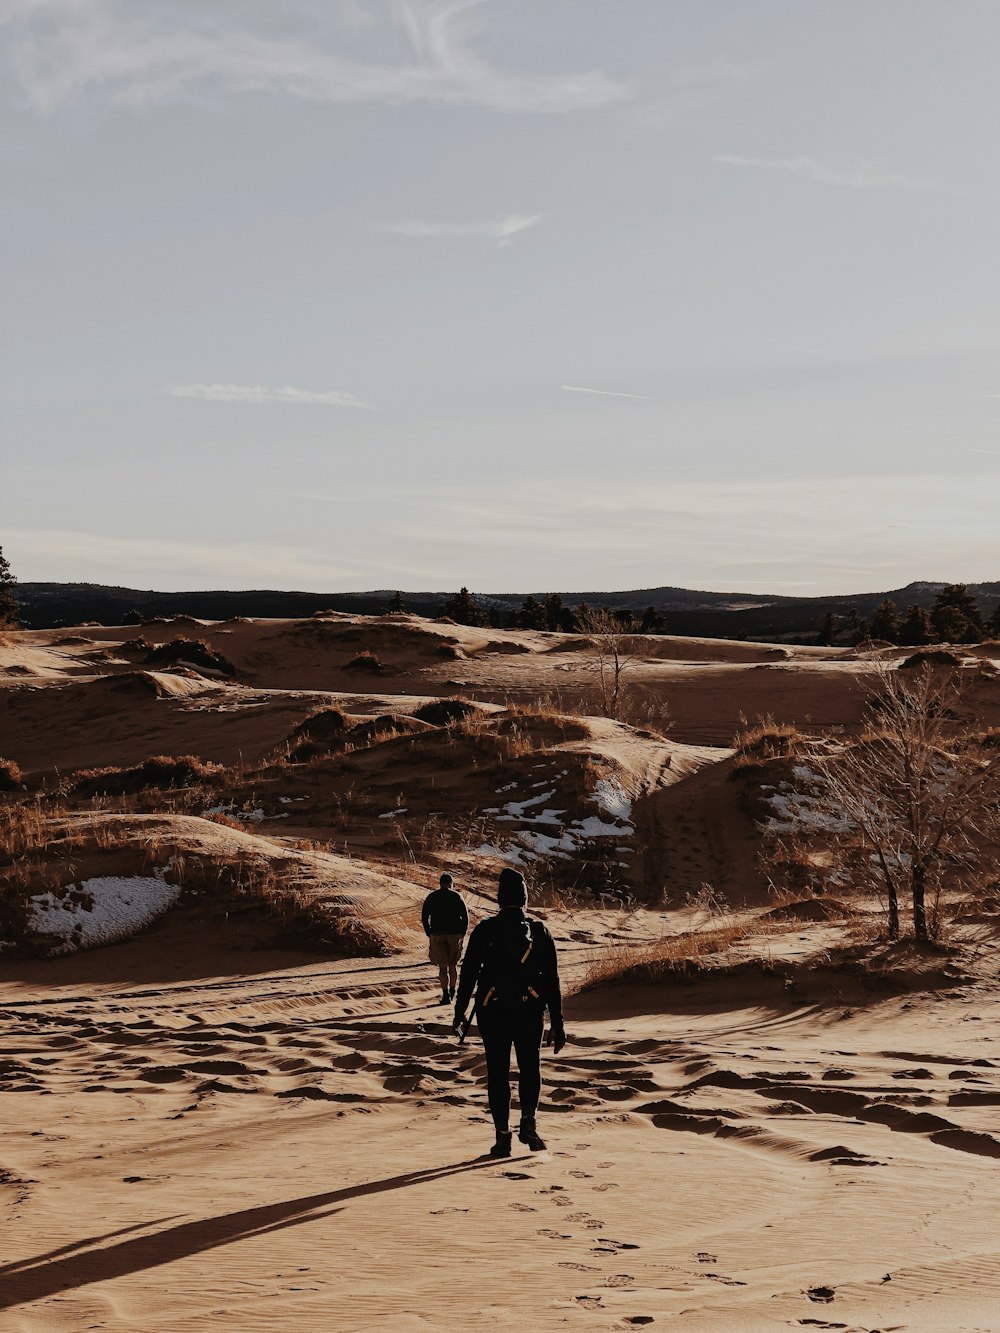 persona in giacca nera che cammina sulla sabbia marrone durante il giorno